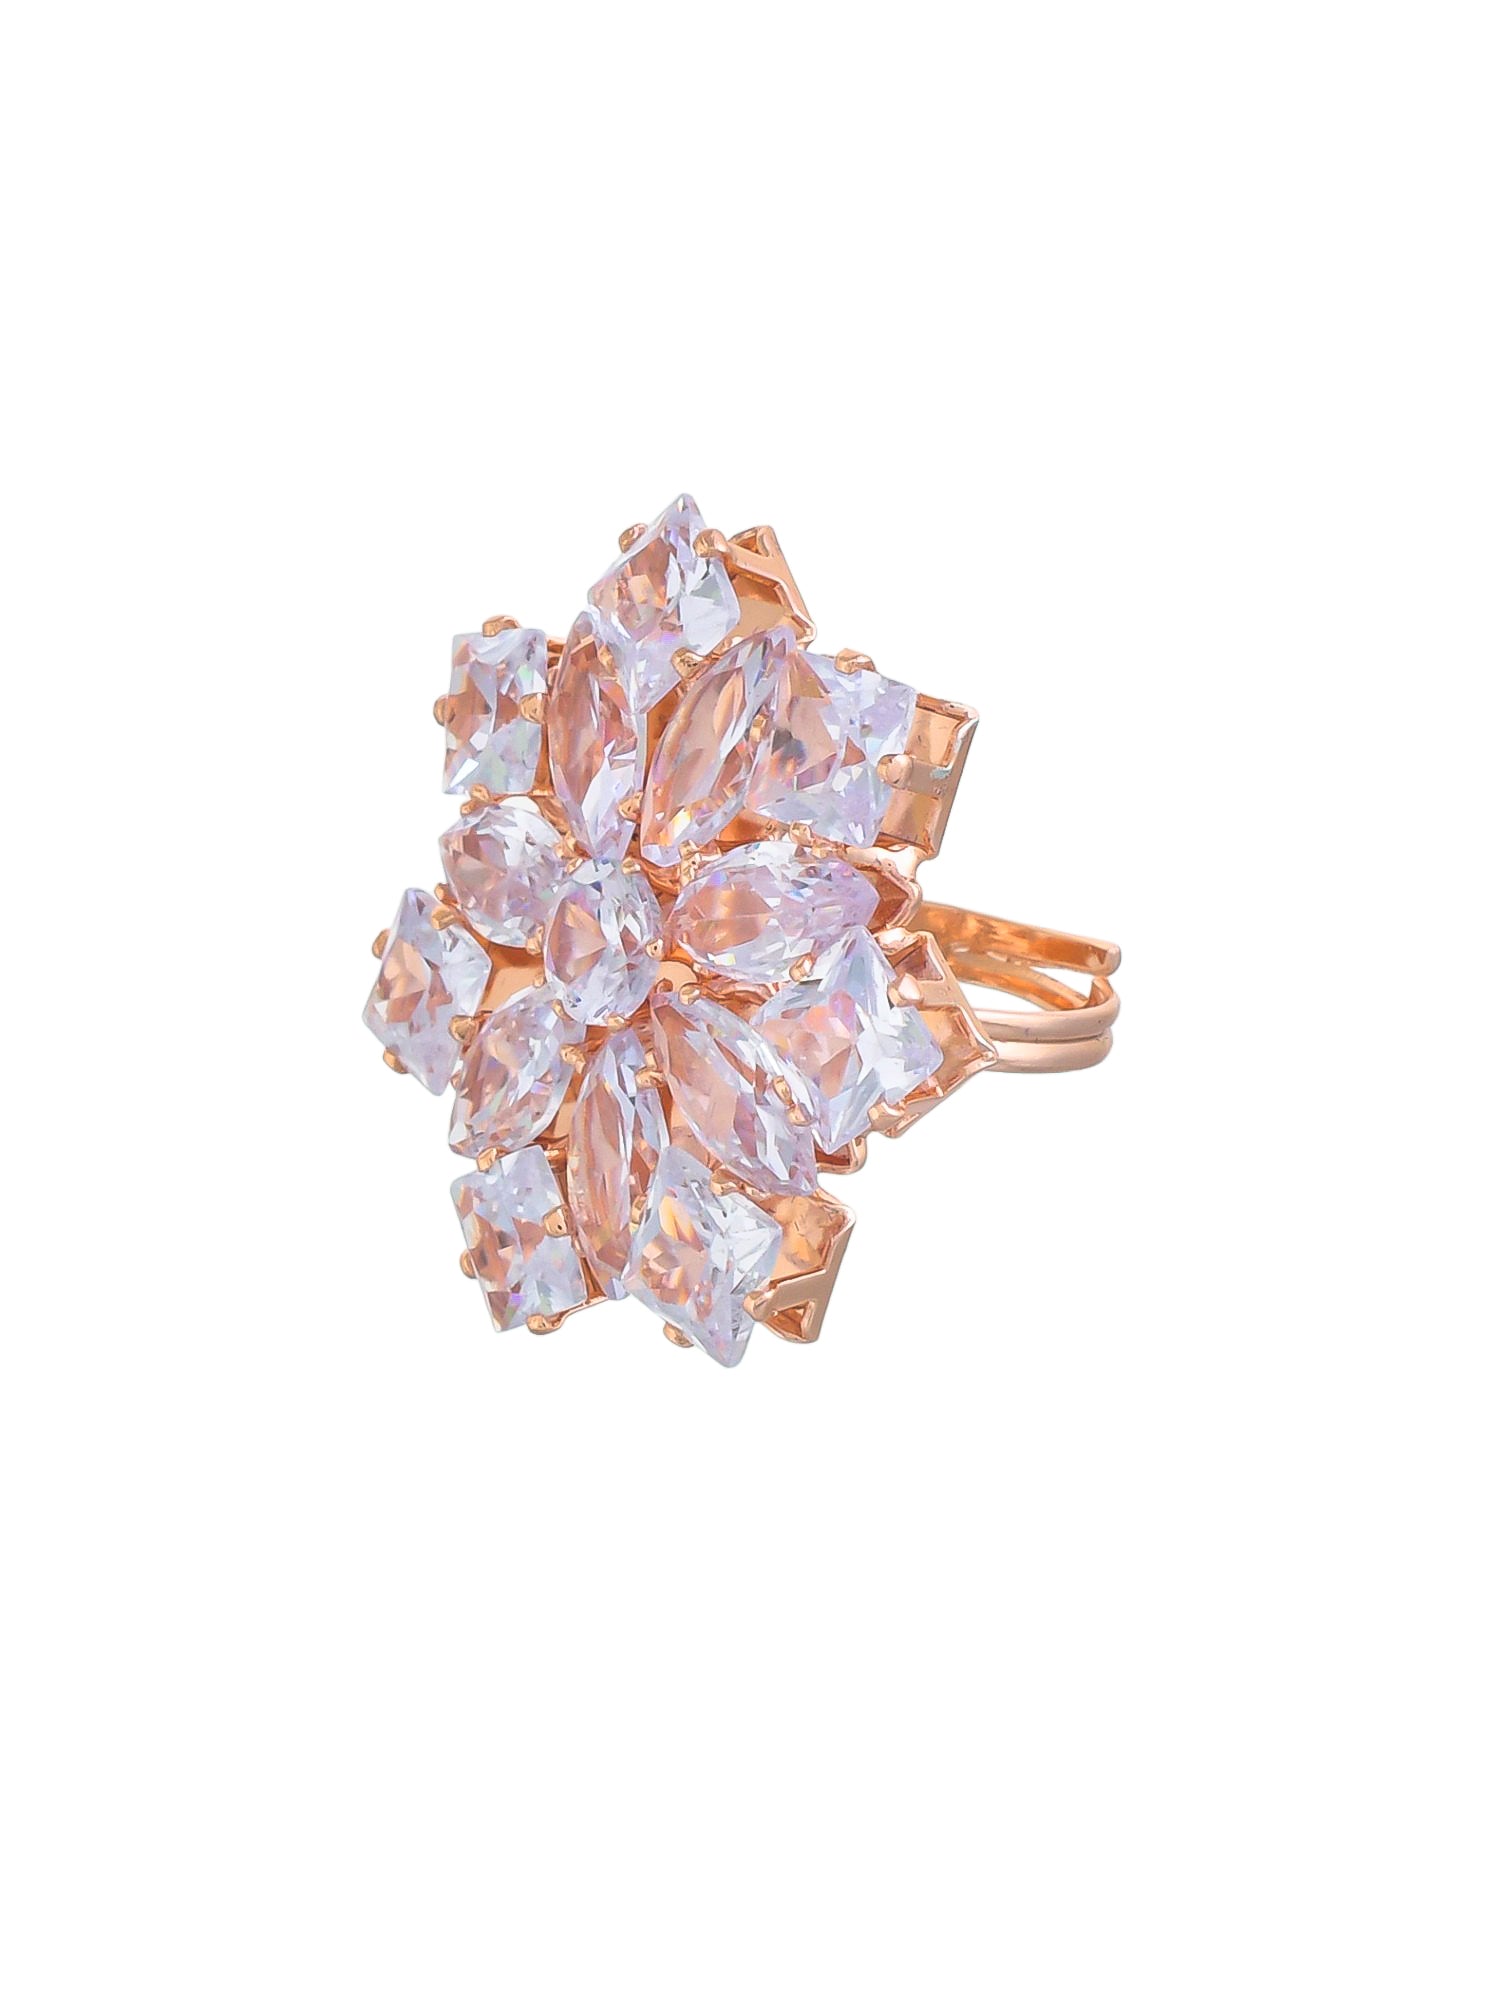 Tranding Rose Gold American Diamonds Adjustable Flower design rings for girls& women.